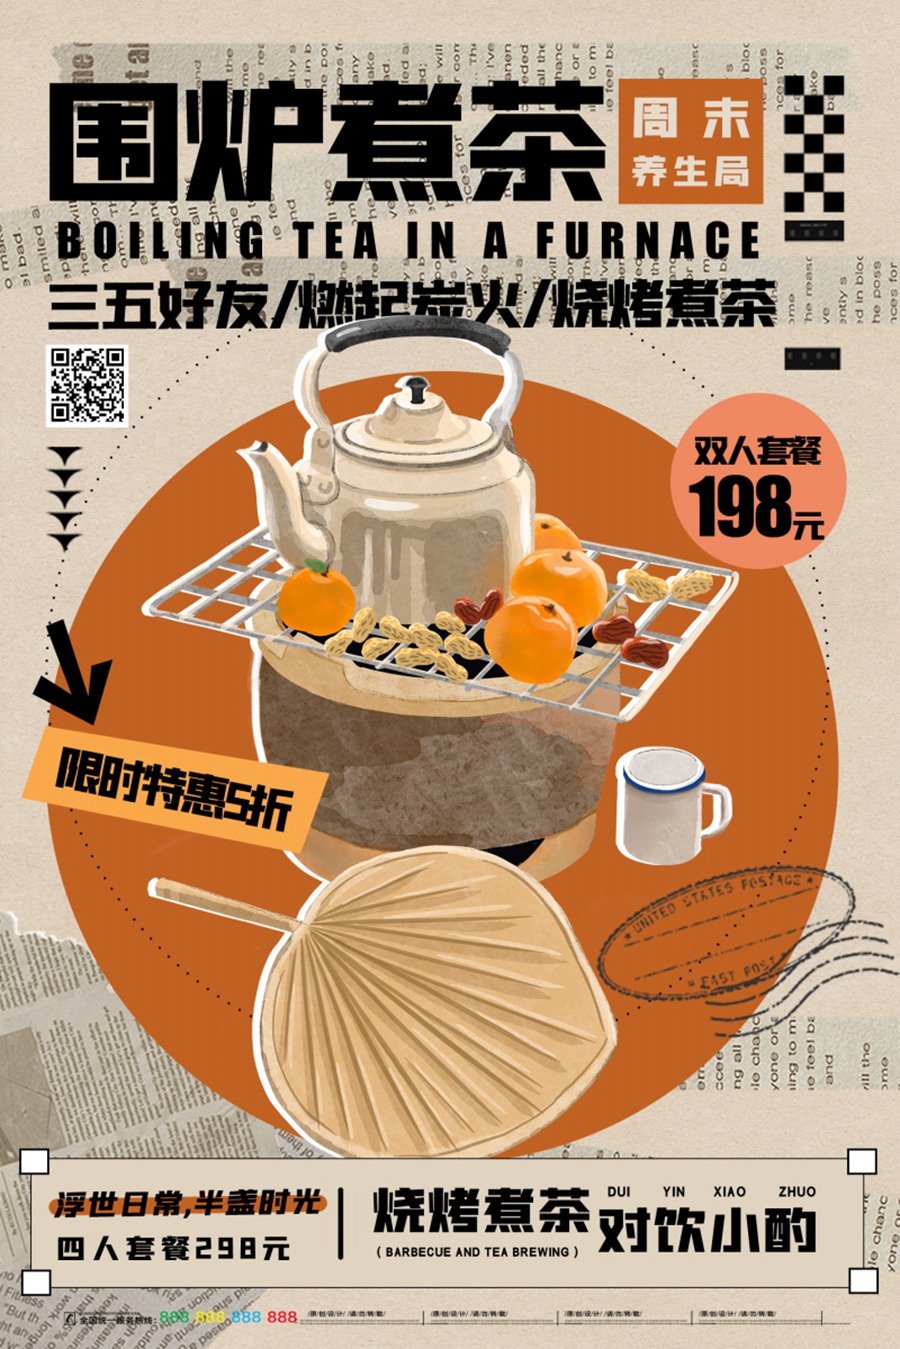 13款新中式围炉煮茶秋冬烤奶茶饮活动宣传海报PSD模板 APP UI 第1张